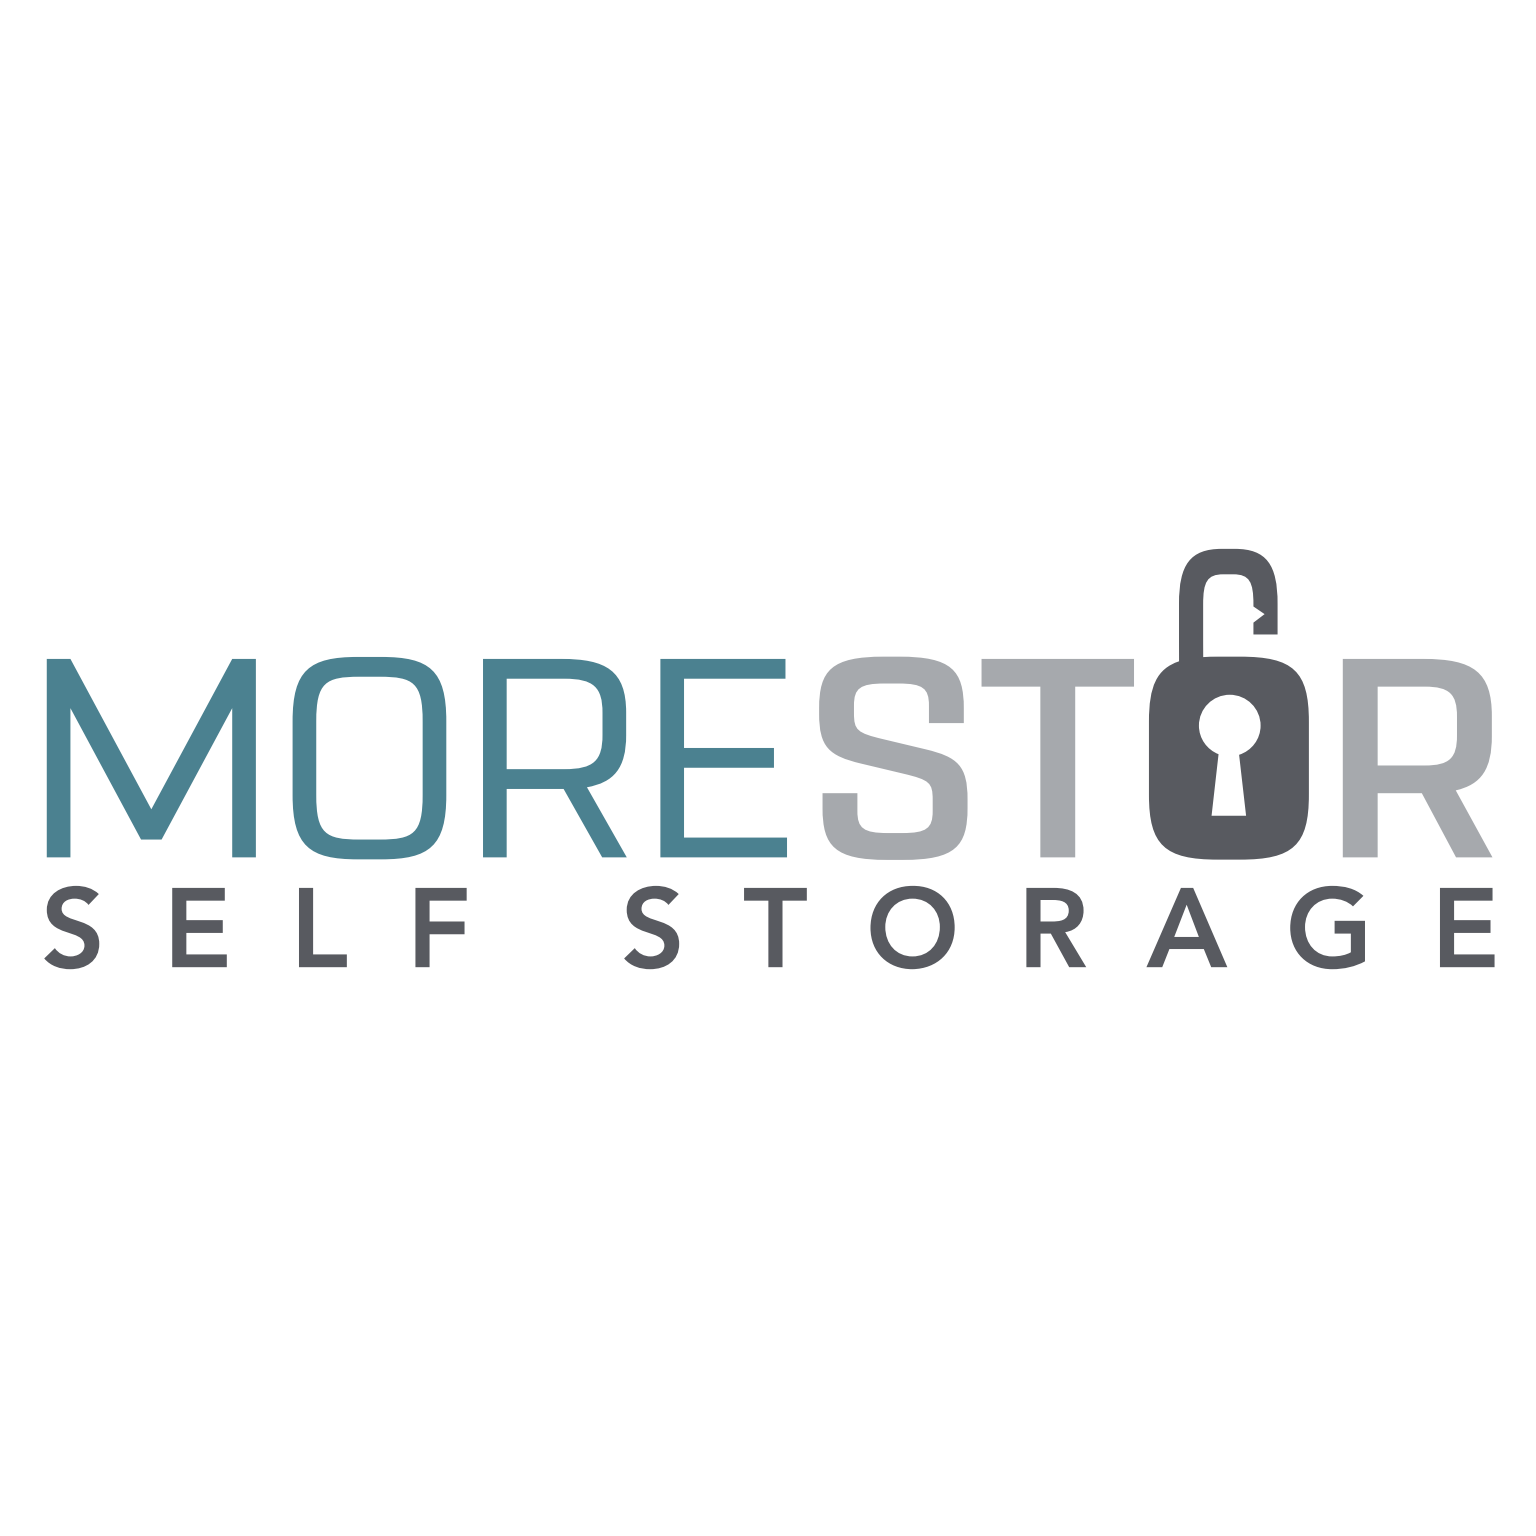 MoreStor Self Storage - Wichita, KS 67230 - (316)796-5015 | ShowMeLocal.com